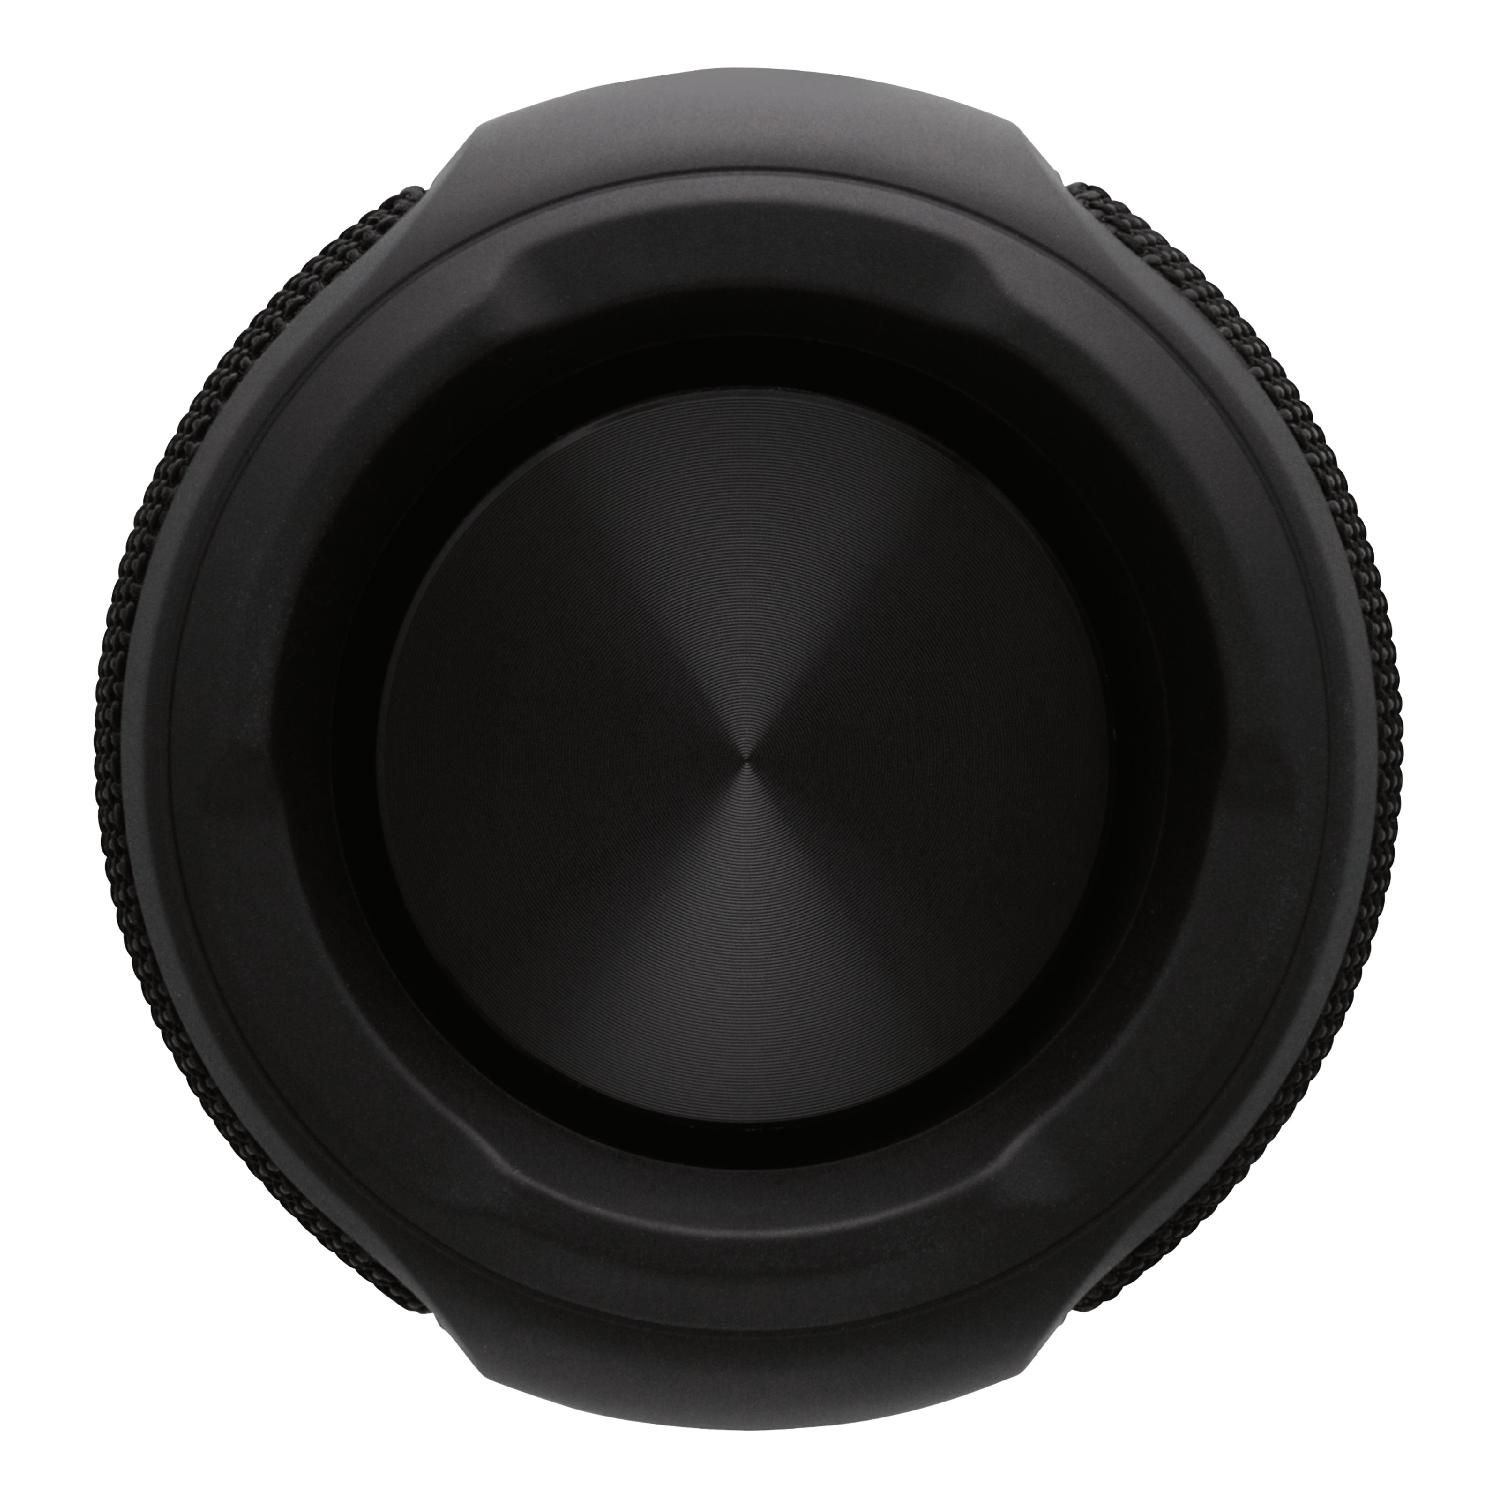 schwarz STREETZ CM765 Bluetooth-Lautsprecher,